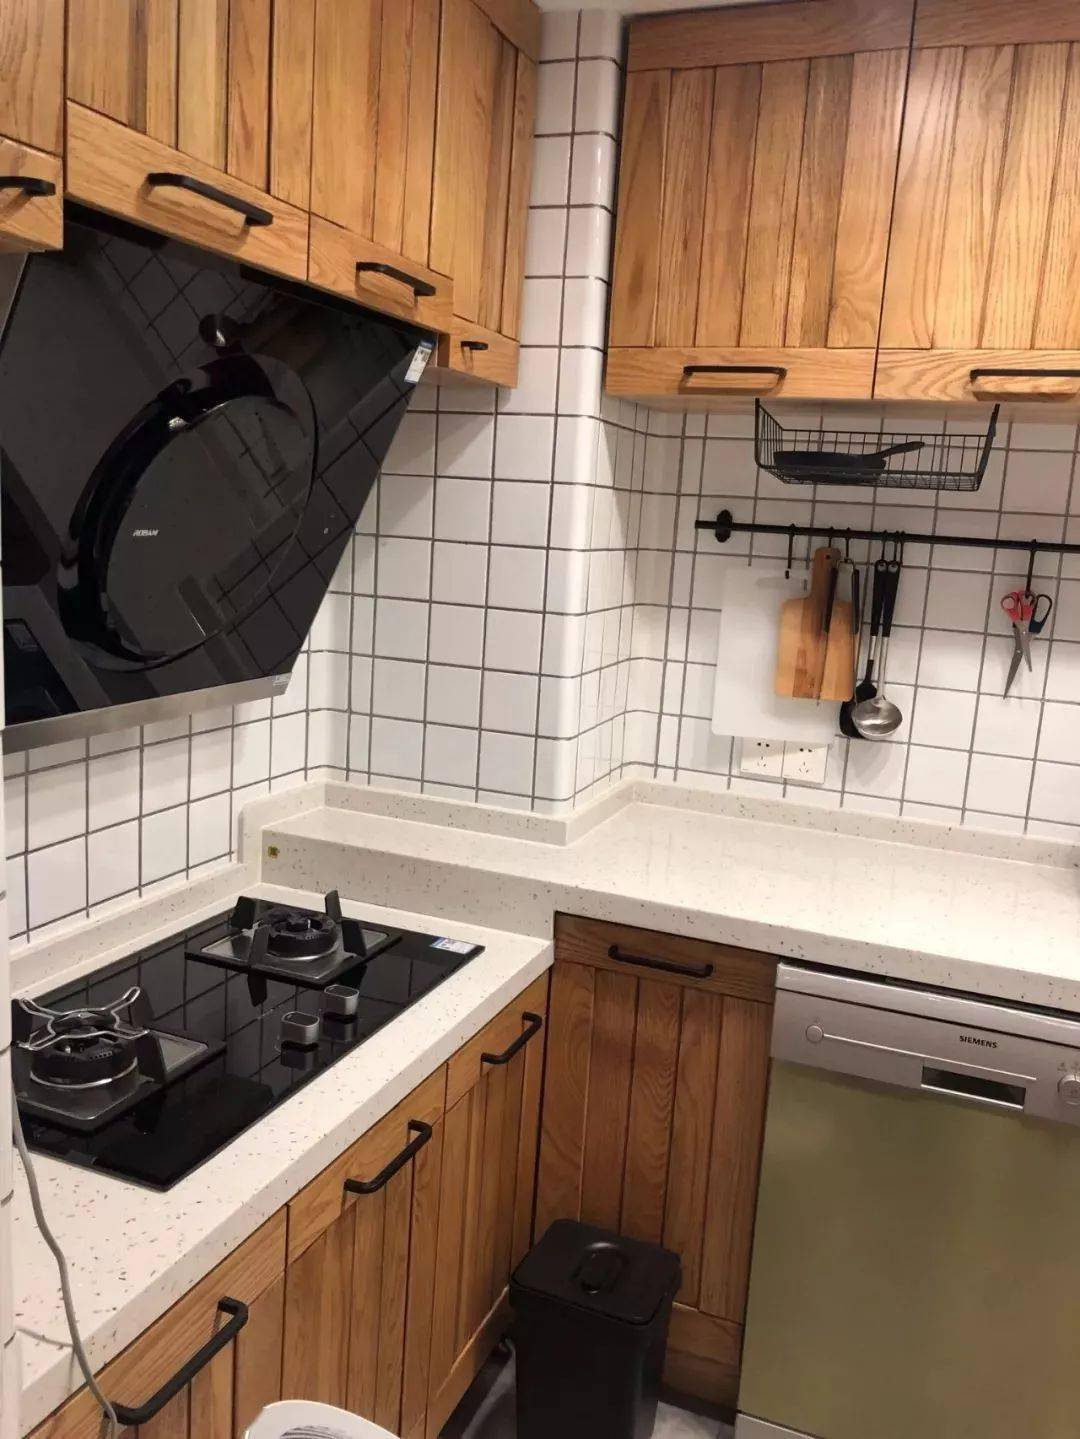 小户型的厨房装修效果图 厨房设计图